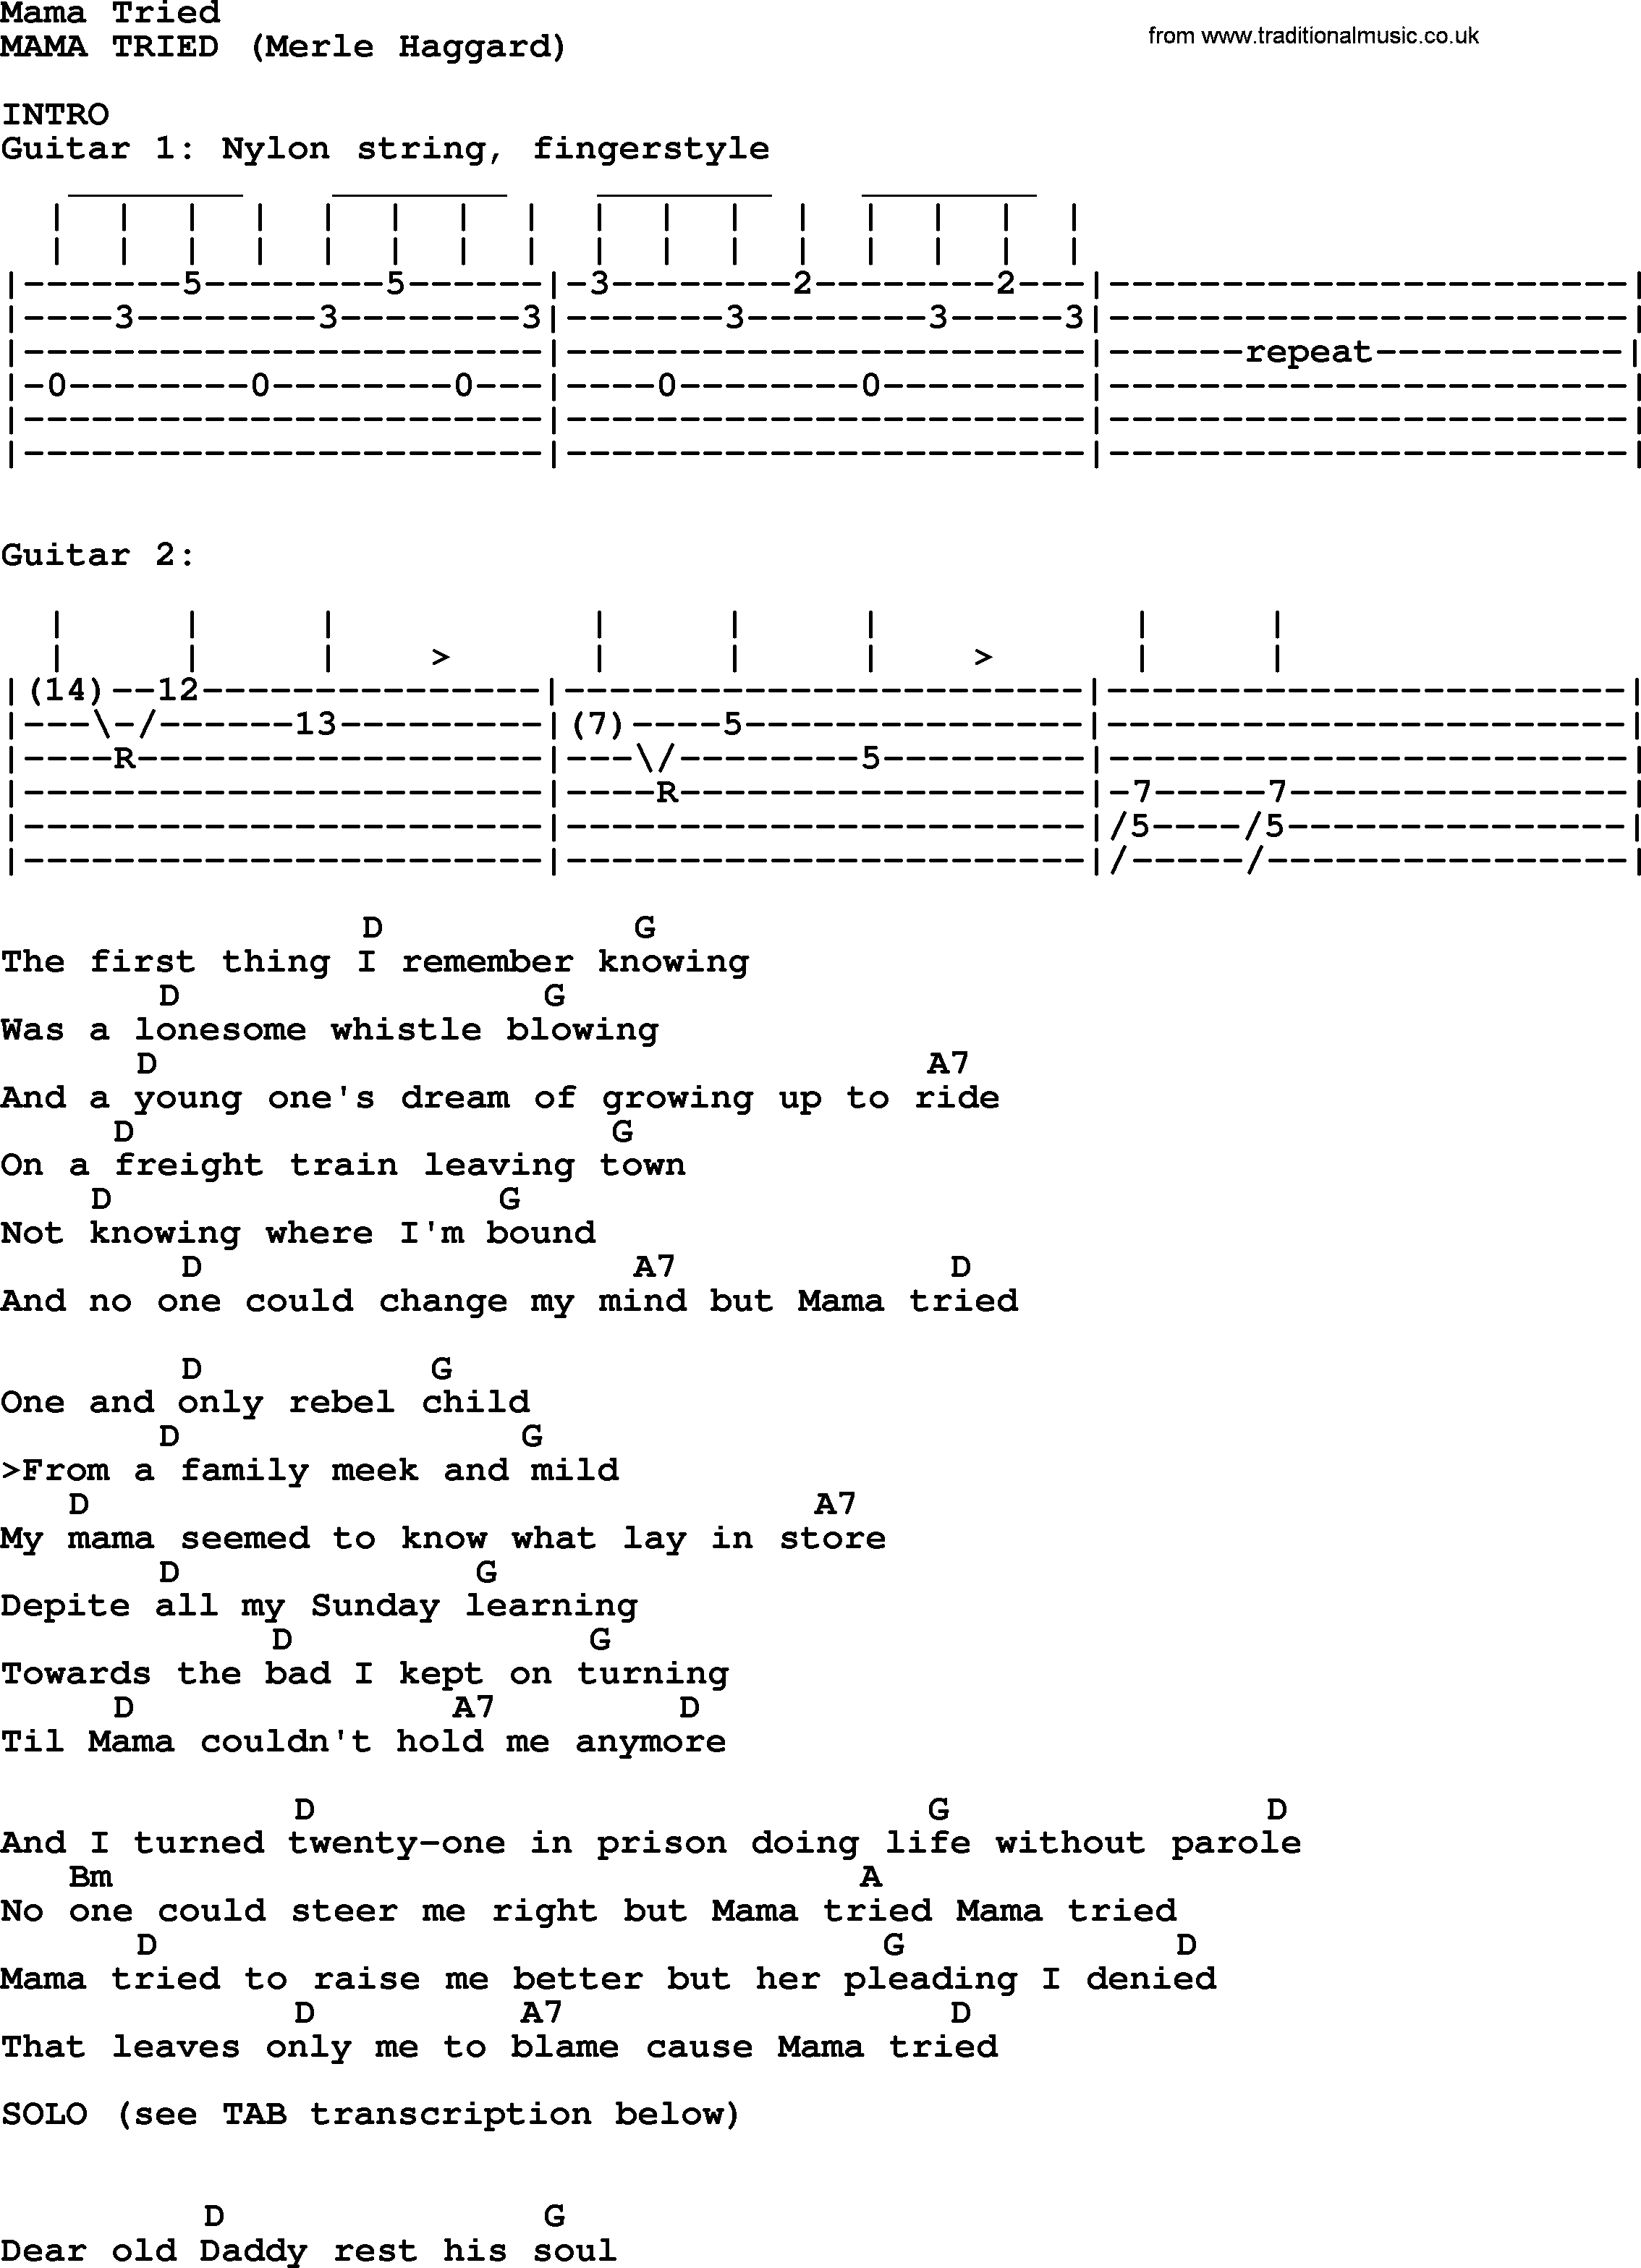 Merle Haggard song: Mama Tried, lyrics and chords